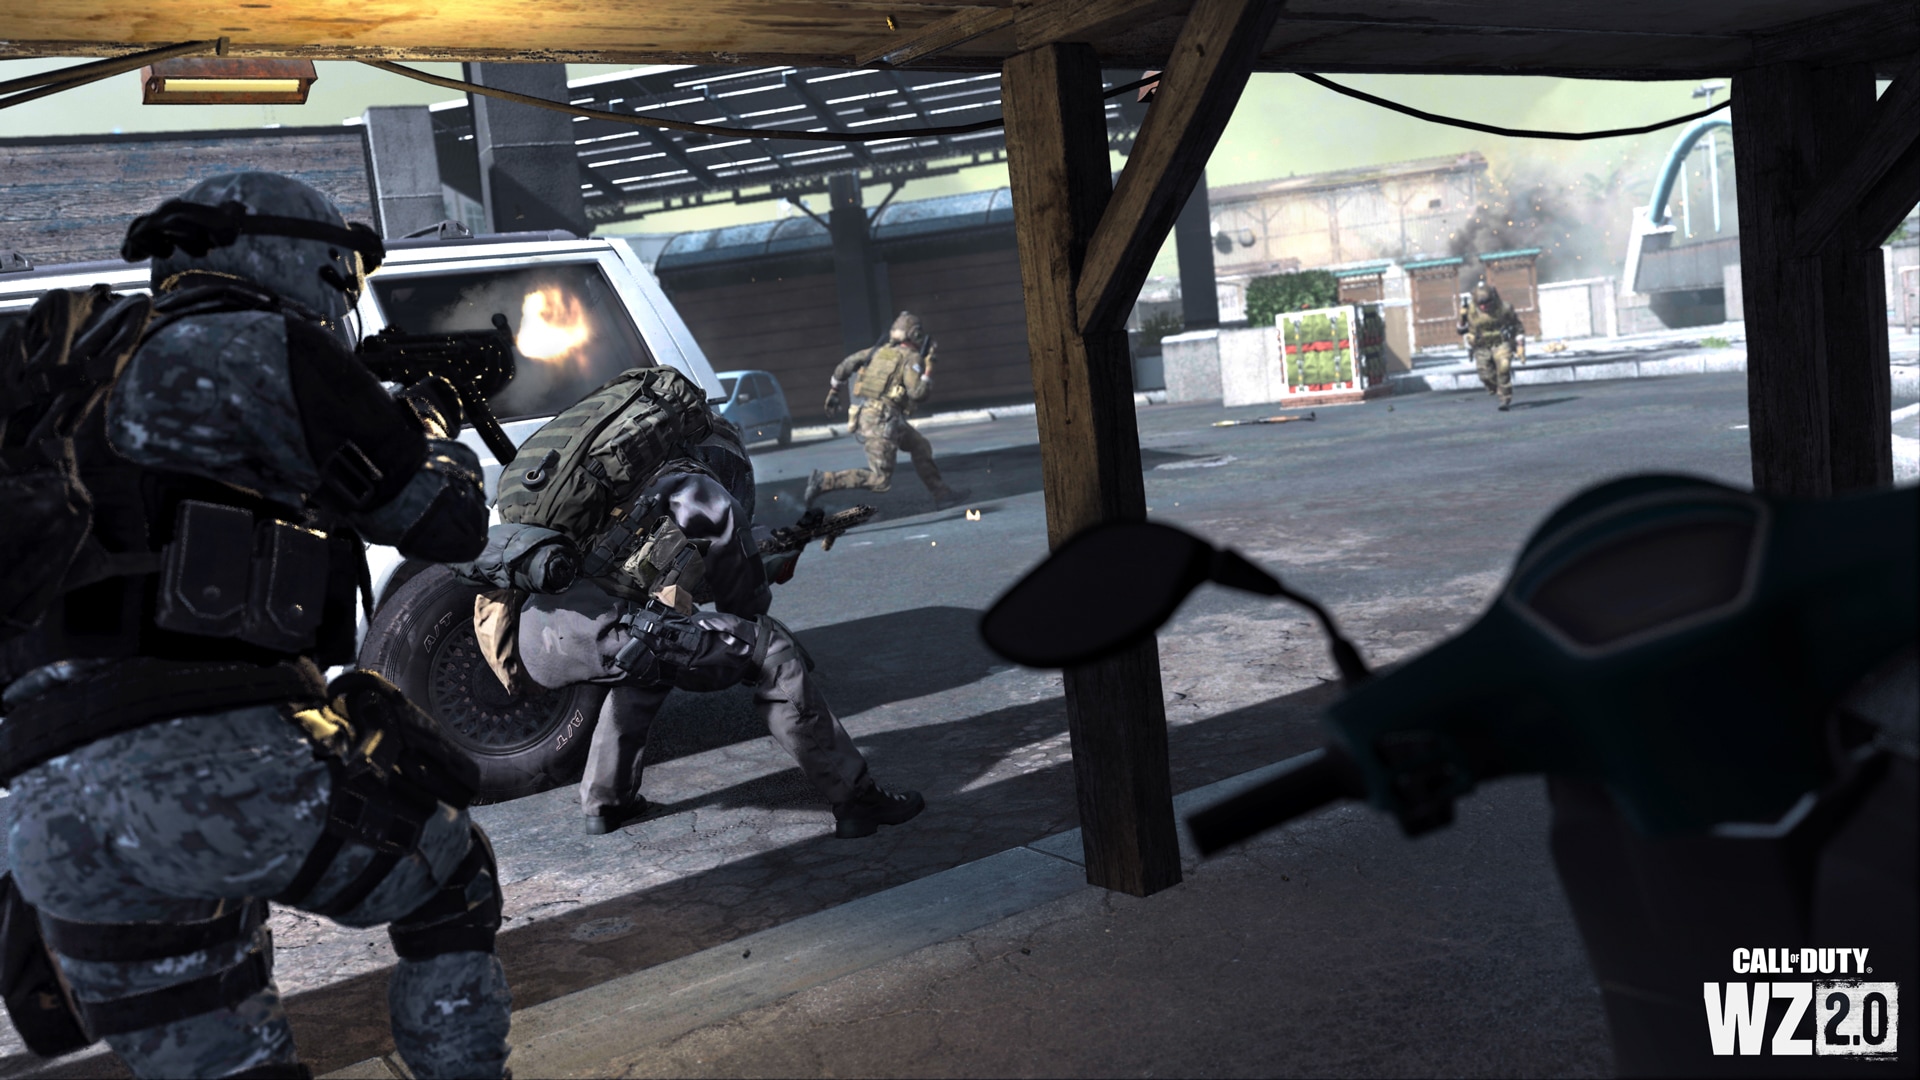 CoD Modern Warfare 2: Todos los códigos y cajas fuertes (Localización)